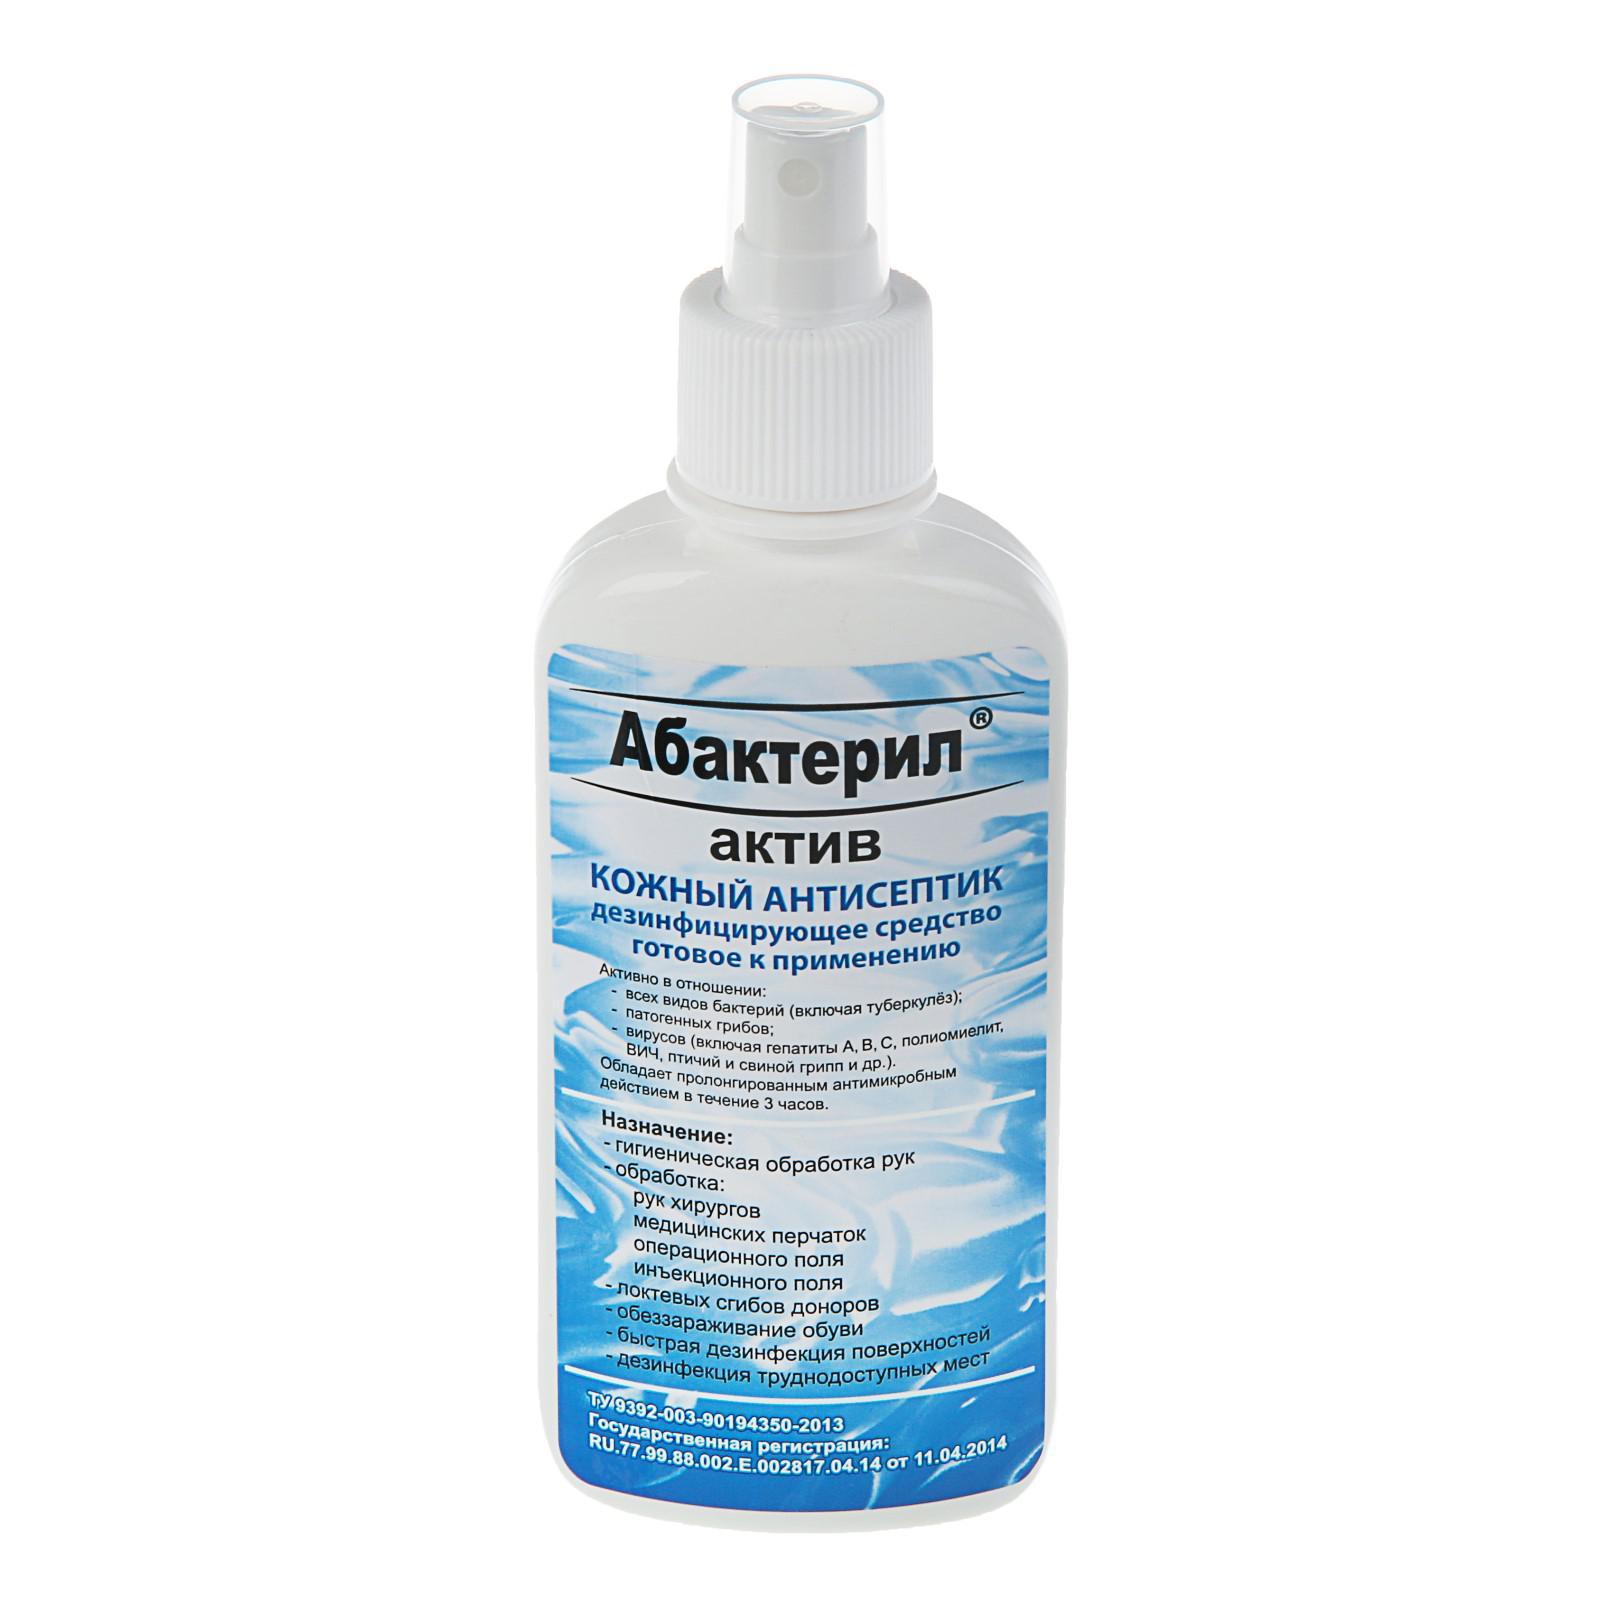 Кожный антисептик «Абактерил-актив» спрей, 200 мл. (3594945) - Купить .